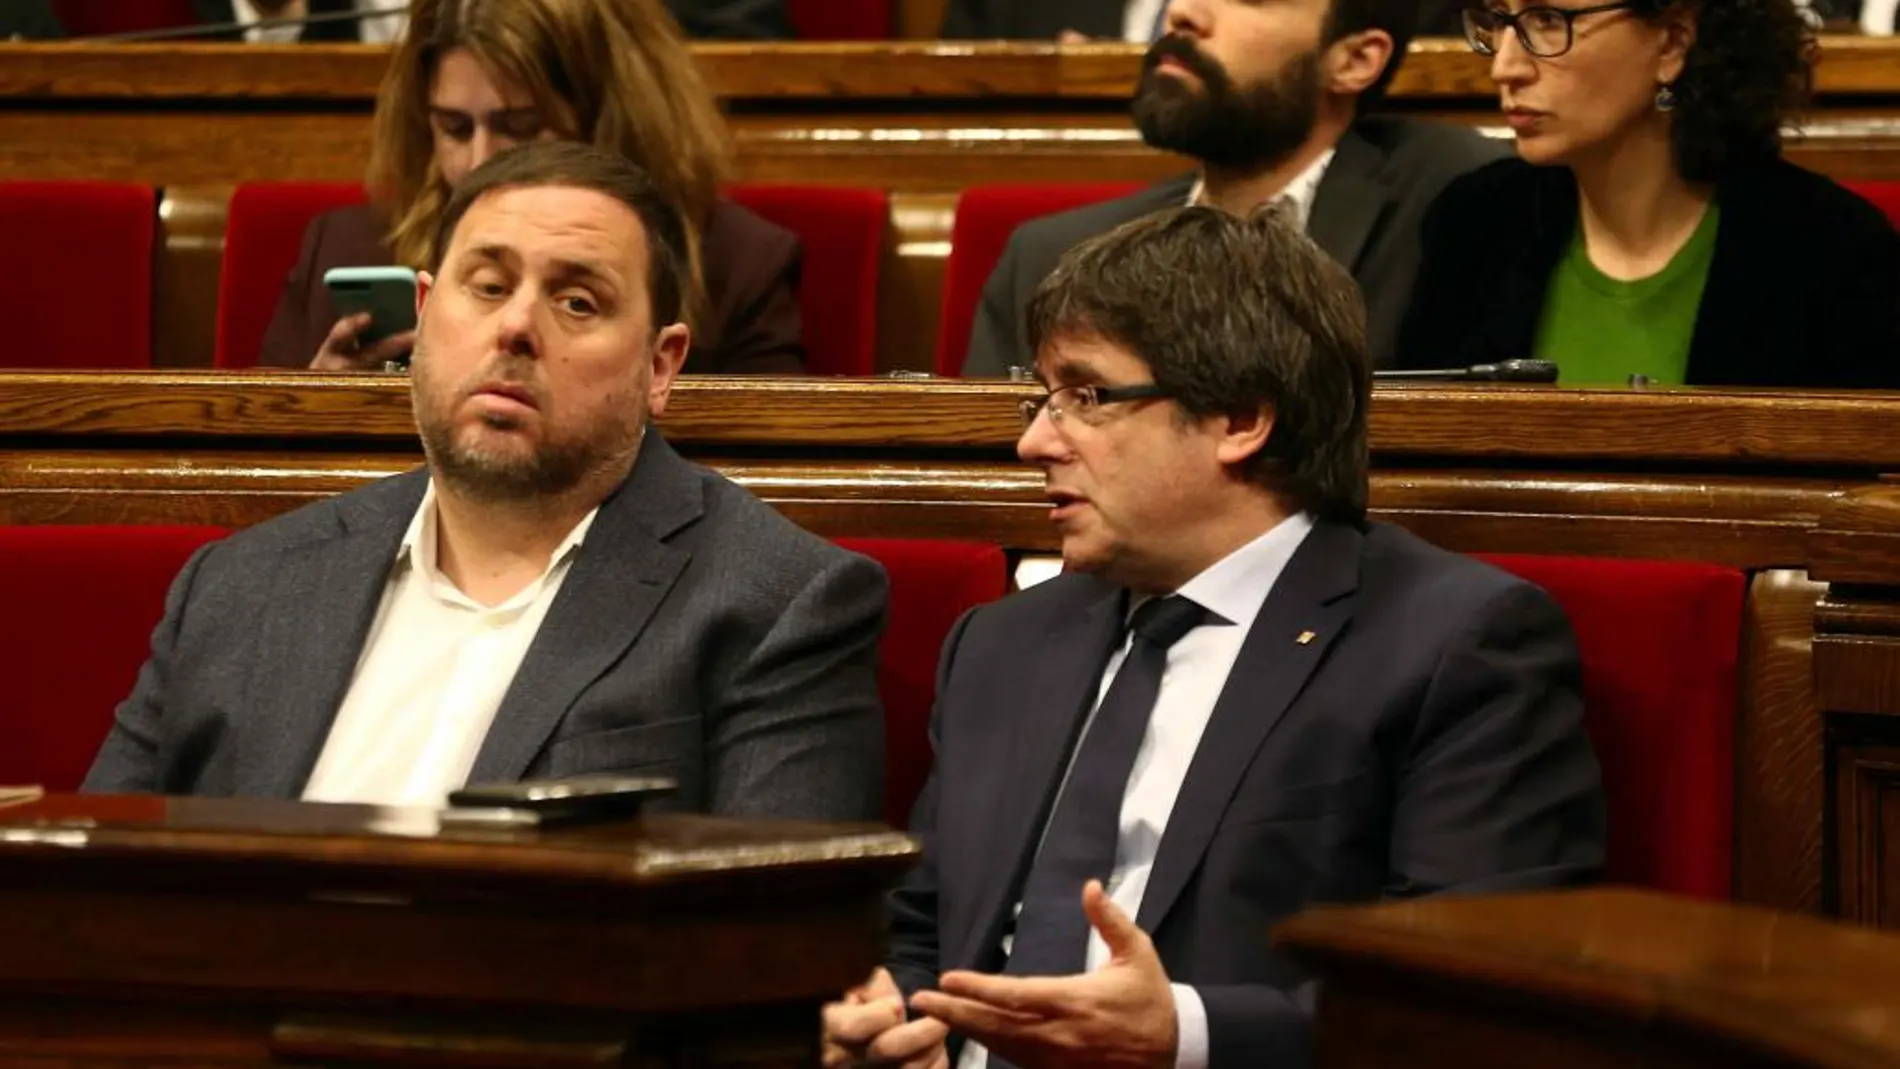 El presidente de la Generalitat, Carles Puigdemont, habla con el vicepresidente, Oriol Junqueras